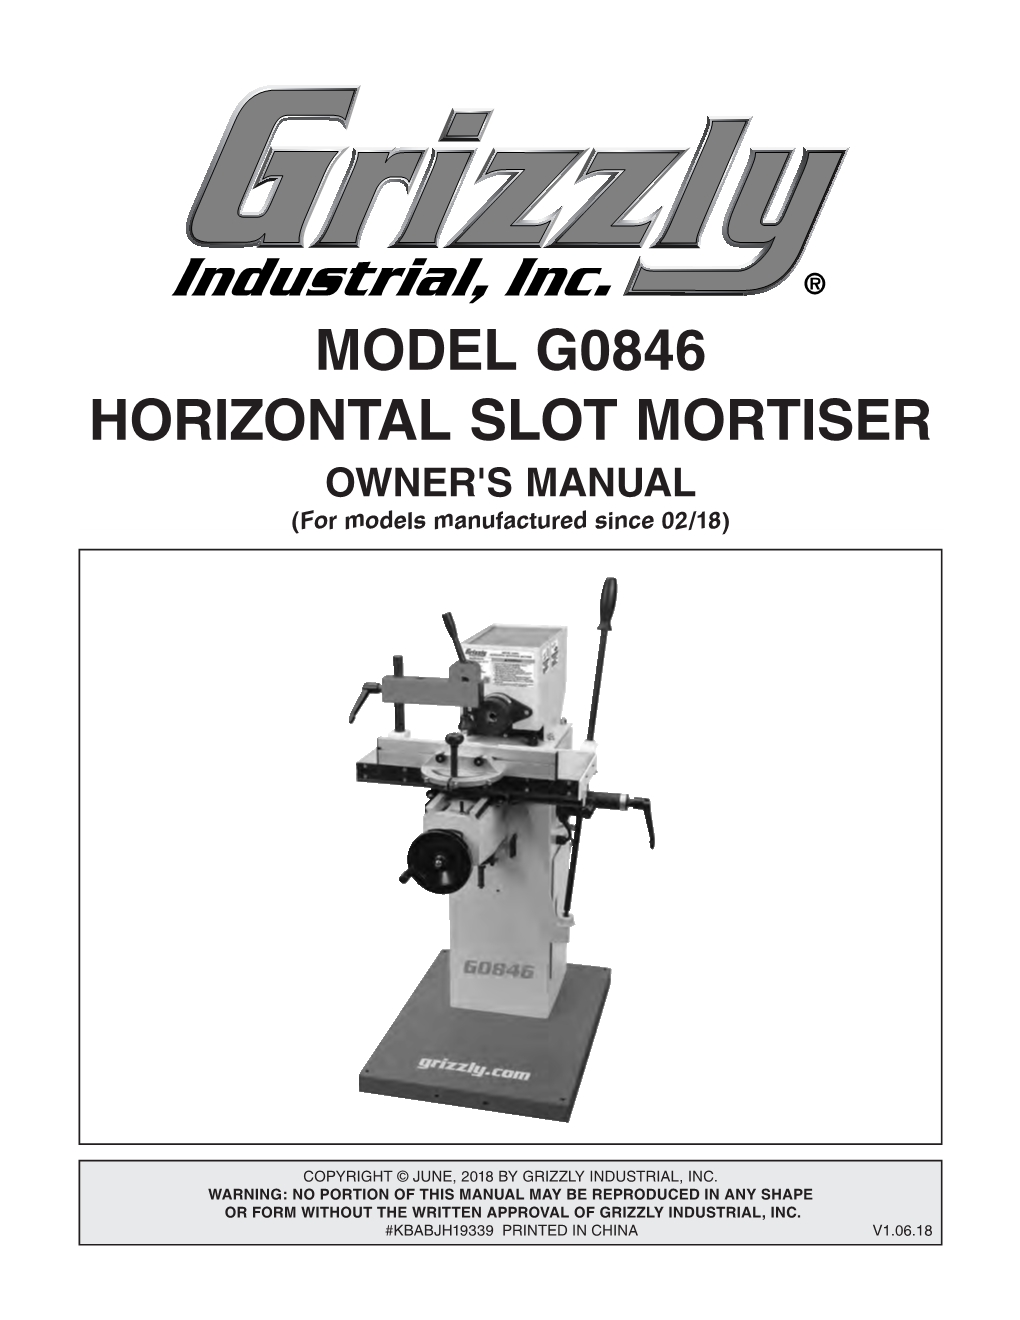 MODEL G0846 HORIZONTAL SLOT MORTISER OWNER's MANUAL (For Models Manufactured Since 02/18)